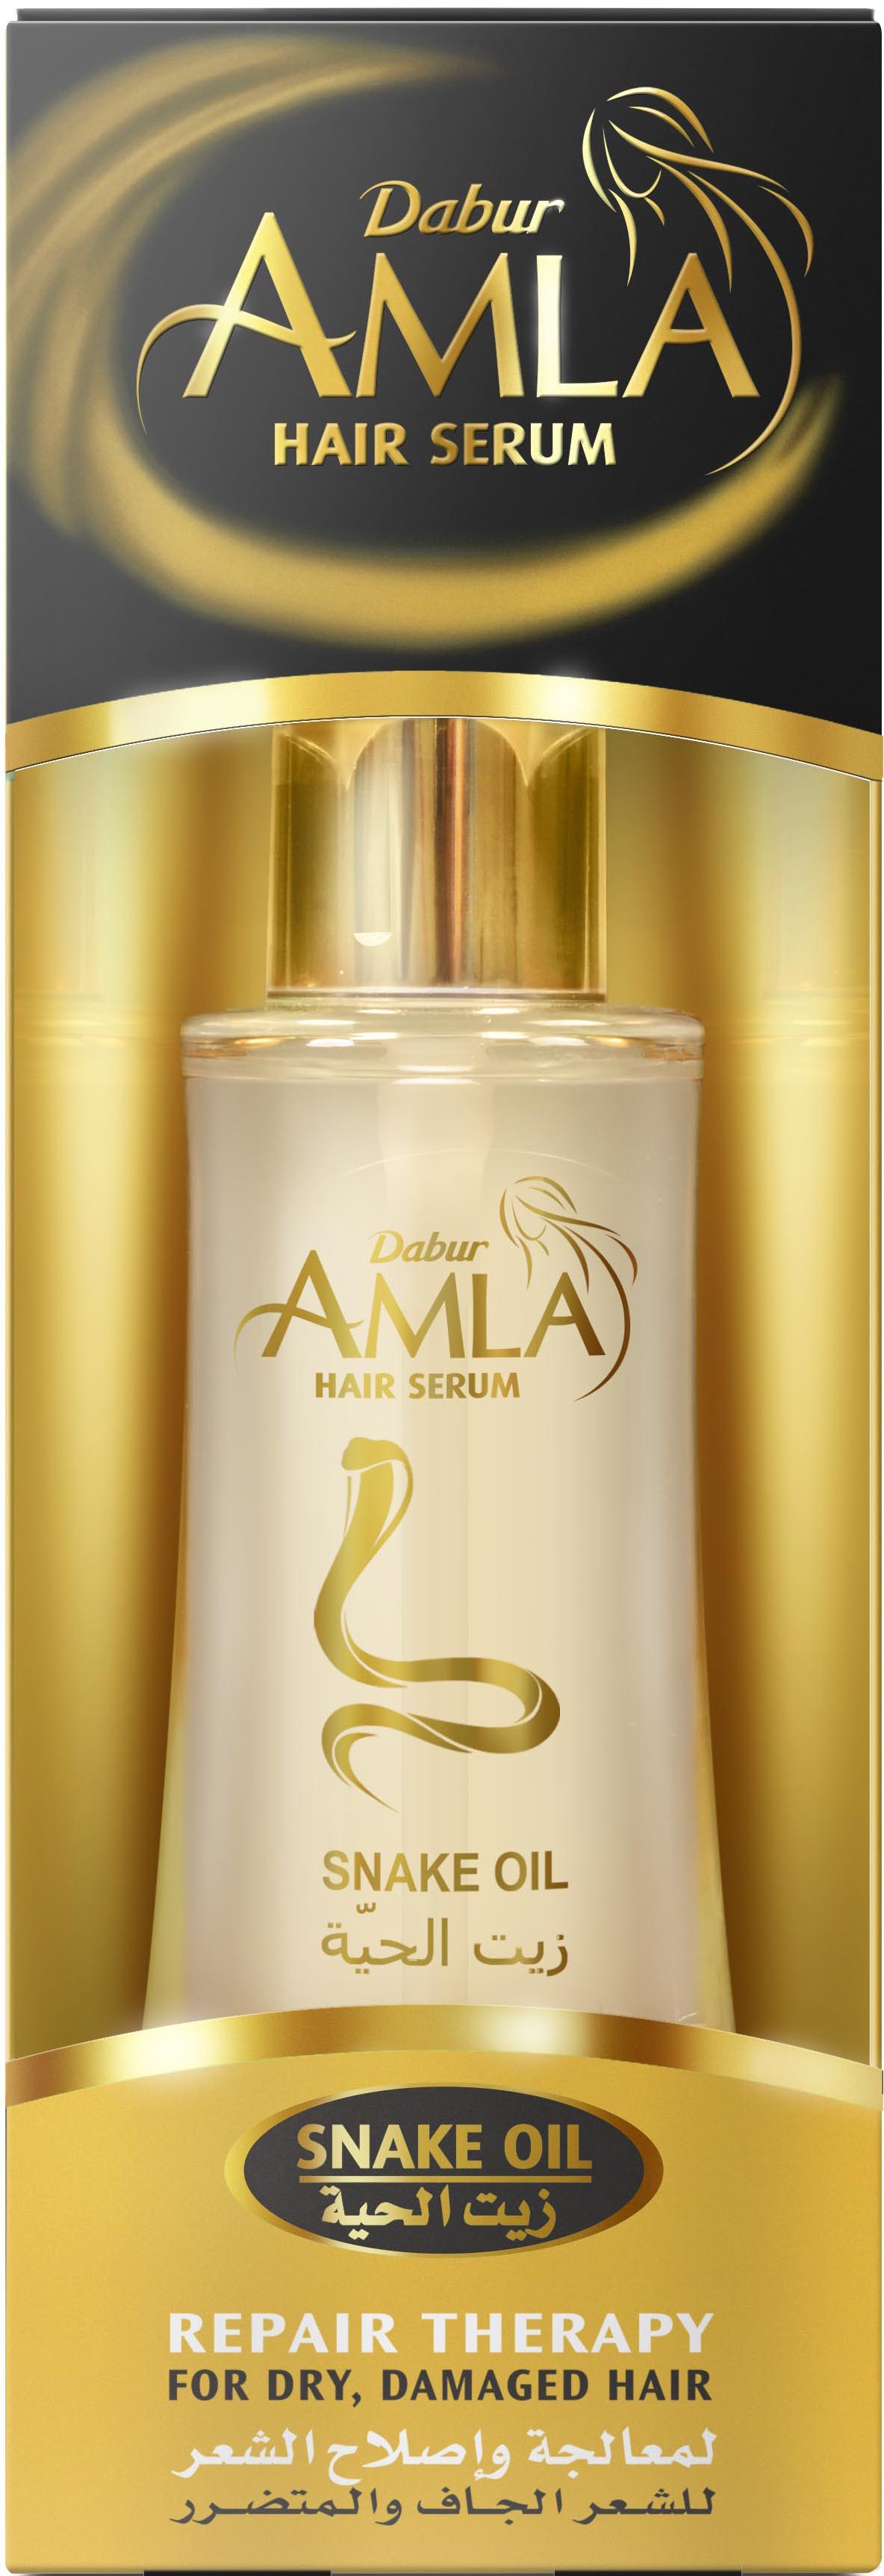 Сыворотка для волос Dabur AMLA Serum Repair Therapy Восстанавливающая терапия сыворотка tefia восстанавливающая для сильно поврежденных волос 100мл линия mycare